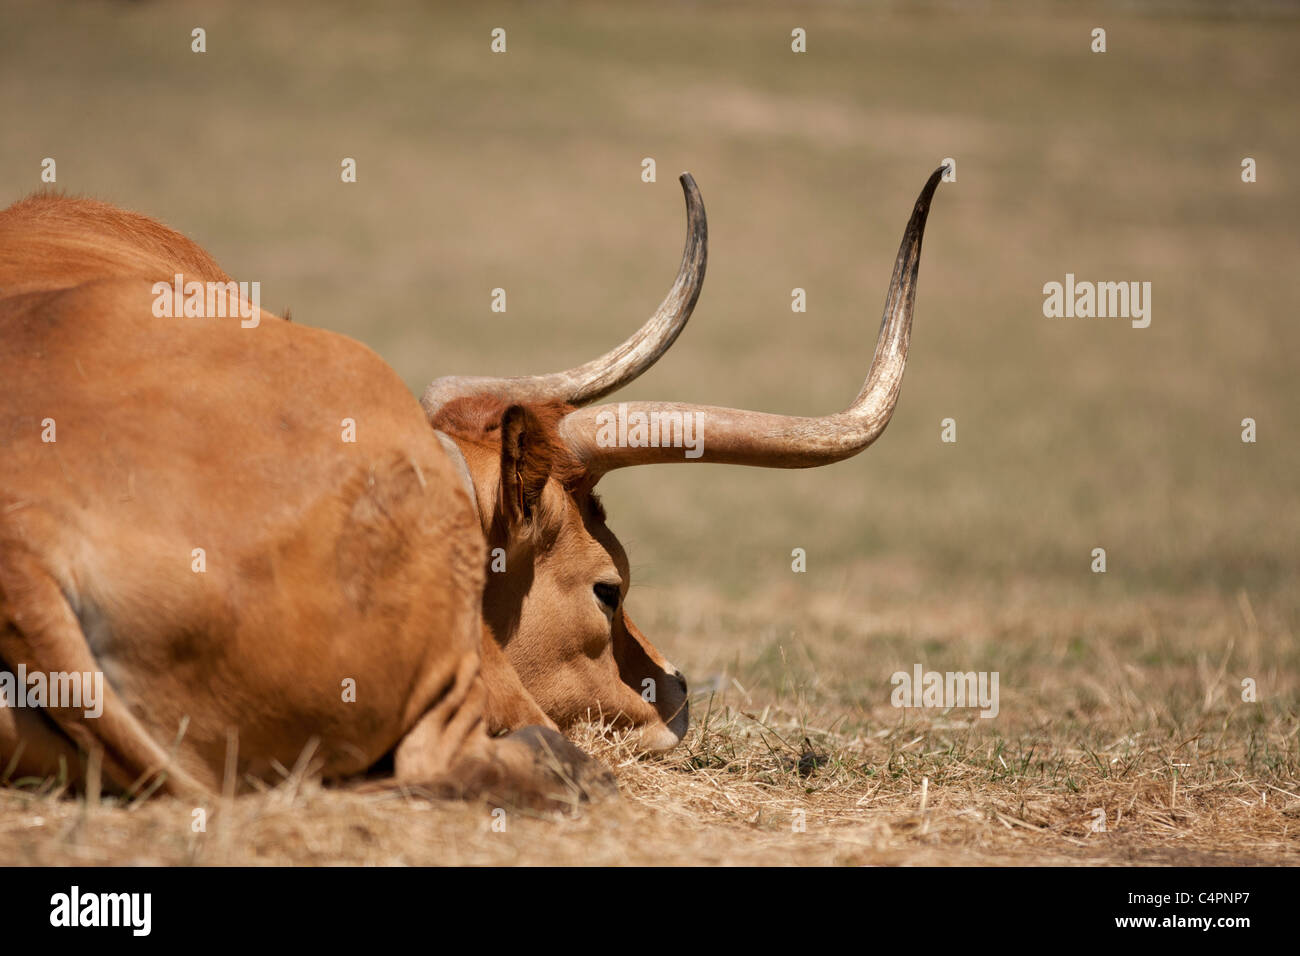 Vache brune couchée sur le l'herbe sèche. Cette photo a été prise un jour ensoleillé chaud avec un Canon 40D et un 70-200 IS USM II. Banque D'Images